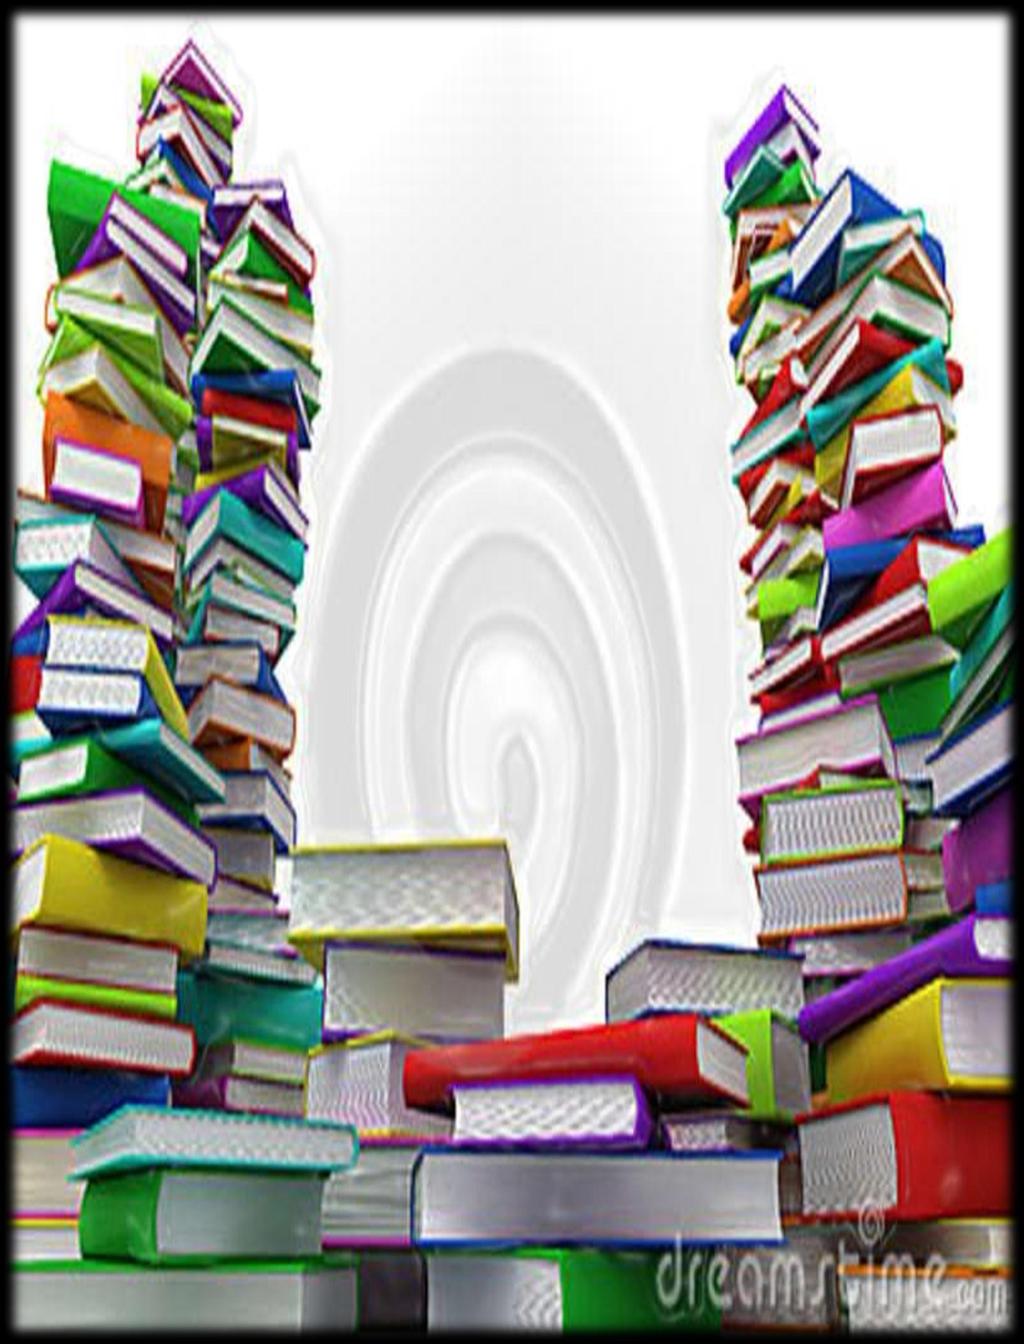 5 Δανειστική βιβλιοθήκη 5 ου δημοτικού σχολείου Περάματος Αξίζει να σημειωθεί ότι πριν την έναρξή της αρκετά νέα βιβλία προστέθηκαν στα ράφια της.